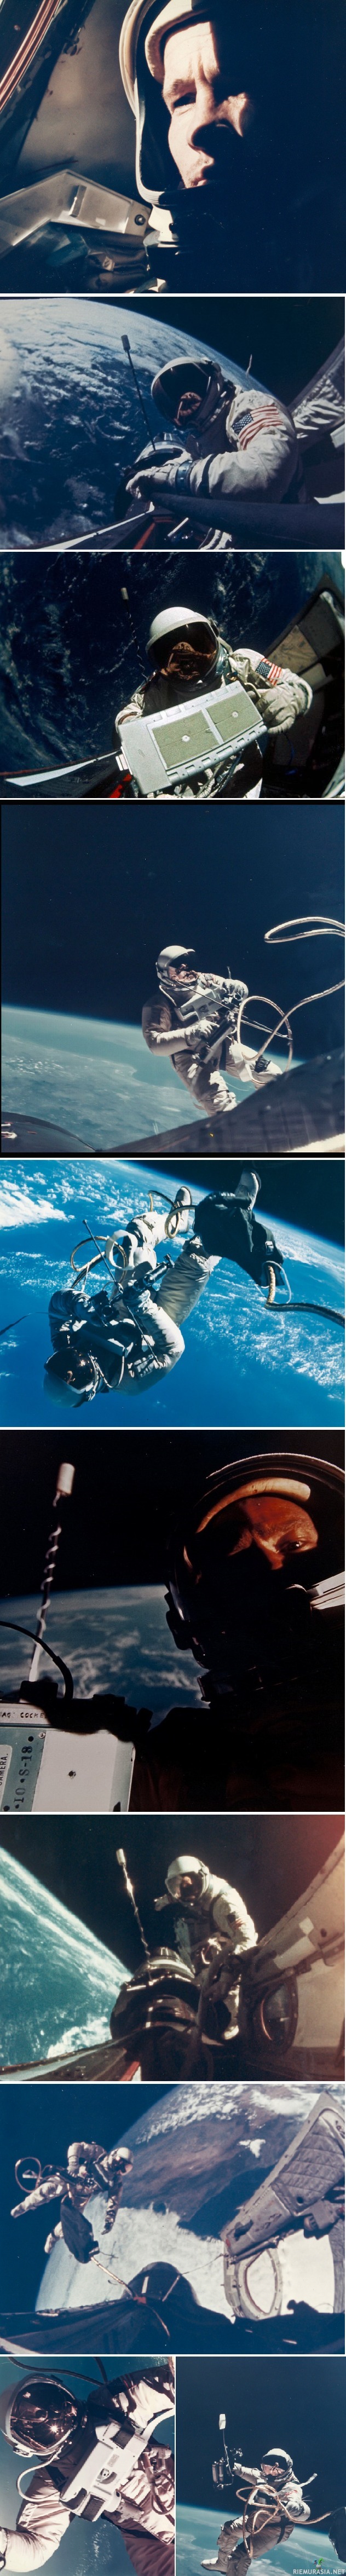 Project Gemini  - Buzz Aldrin ja Ed Whiten ottamia selfie-kuvia ja muita kuvia maankiertoradalta vuosilta 1965-1966.

Gemini (avaruusohjelma):
Vuosina 1963–1966 toimineen avaruusohjelman tarkoituksena oli kehittää edistyneempiä menetelmiä avaruuden tutkimiseksi, joista osa näytteli suurta osaa Apollo-ohjelman onnistumisessa. Gemini-lennoilla harjoiteltiin muun muassa avaruuskävelyä ja avaruusaluksiin telakoitumista.

White suoritti Yhdysvaltain ensimmäisen avaruuskävelyn. White sai surmansa Apollo 1:n harjoituksessa sattuneessa tulipalossa 27. tammikuuta 1967.  vuonna 1969 Buzz Aldrin astui Neil Armstrongin jälkeen toisena ihmisenä kuun pinnalle Apollo 11 -lennolla. Pieni kraatteri lähellä laskeutumispaikkaa on nimetty Aldrinin mukaan.
Aldrinilla on tähti Hollywoodin Walk of Fame -jalkakäytävällä. Hän on nykyään 86 vuotias.